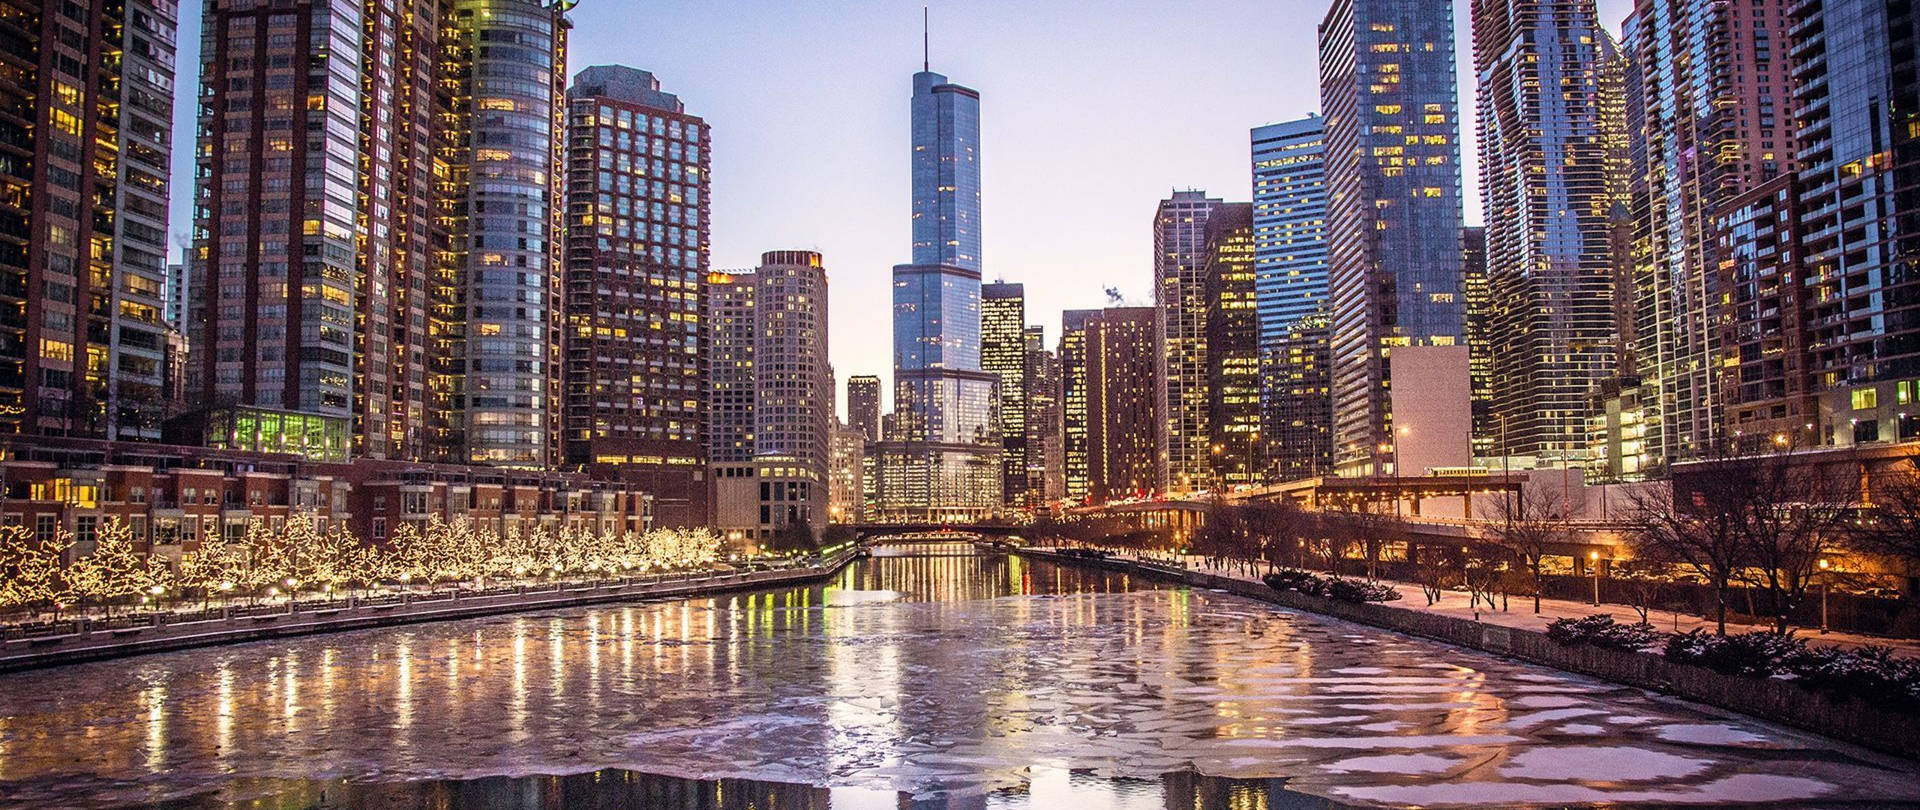 4K Ultra HD City Of Chicago Riverwallpaper: 4K Ultra HD City of Chicago Rivertapet Wallpaper